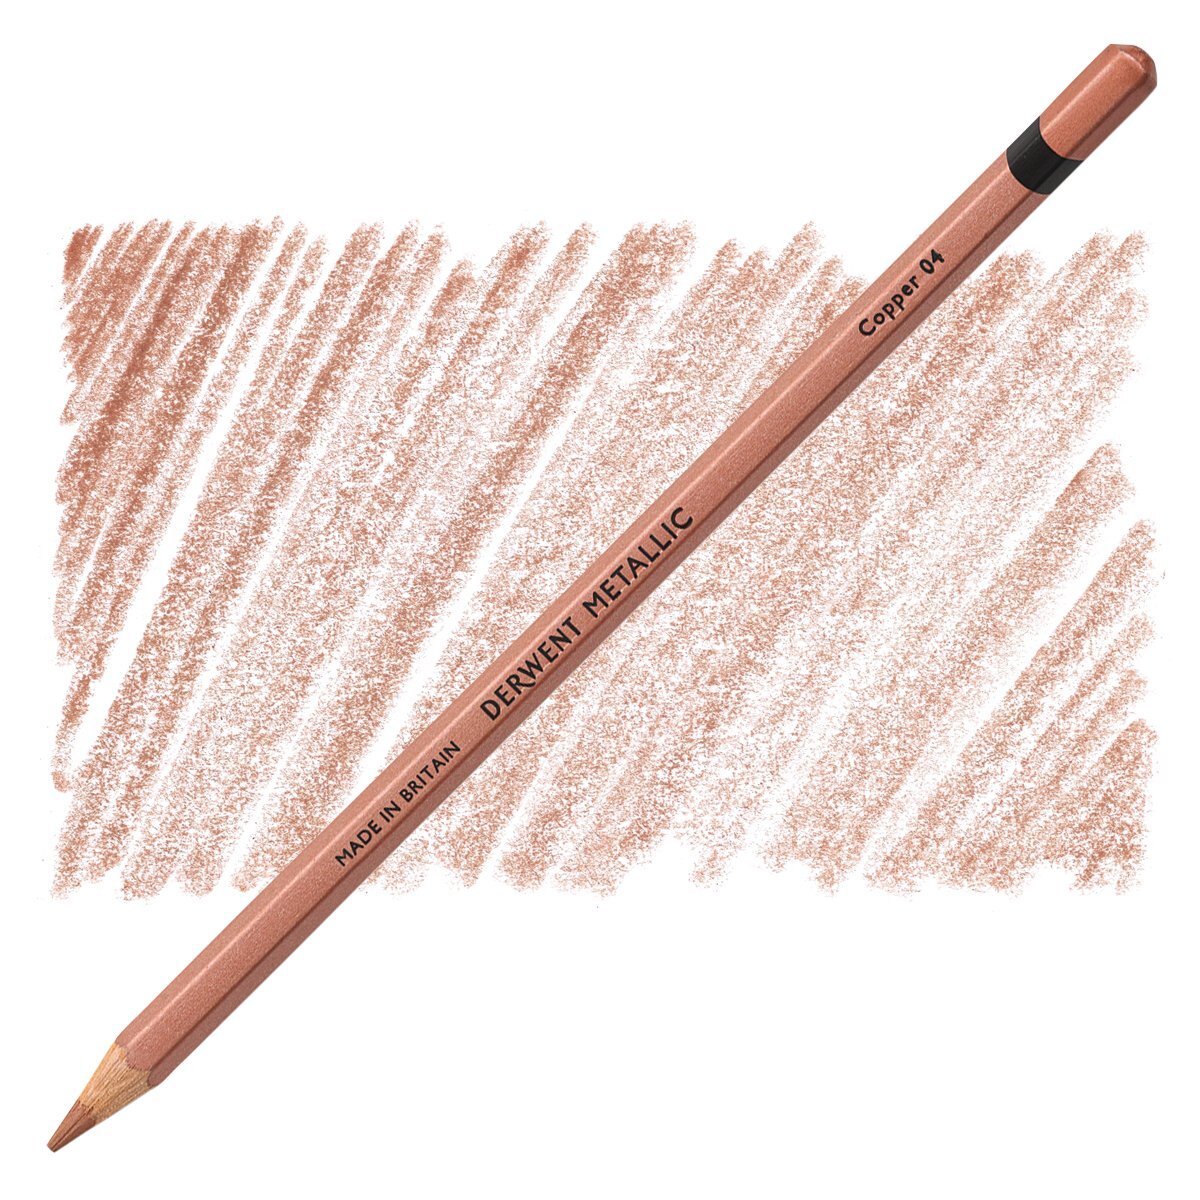 Derwent 6 Metallic Pencils - 5028252072625